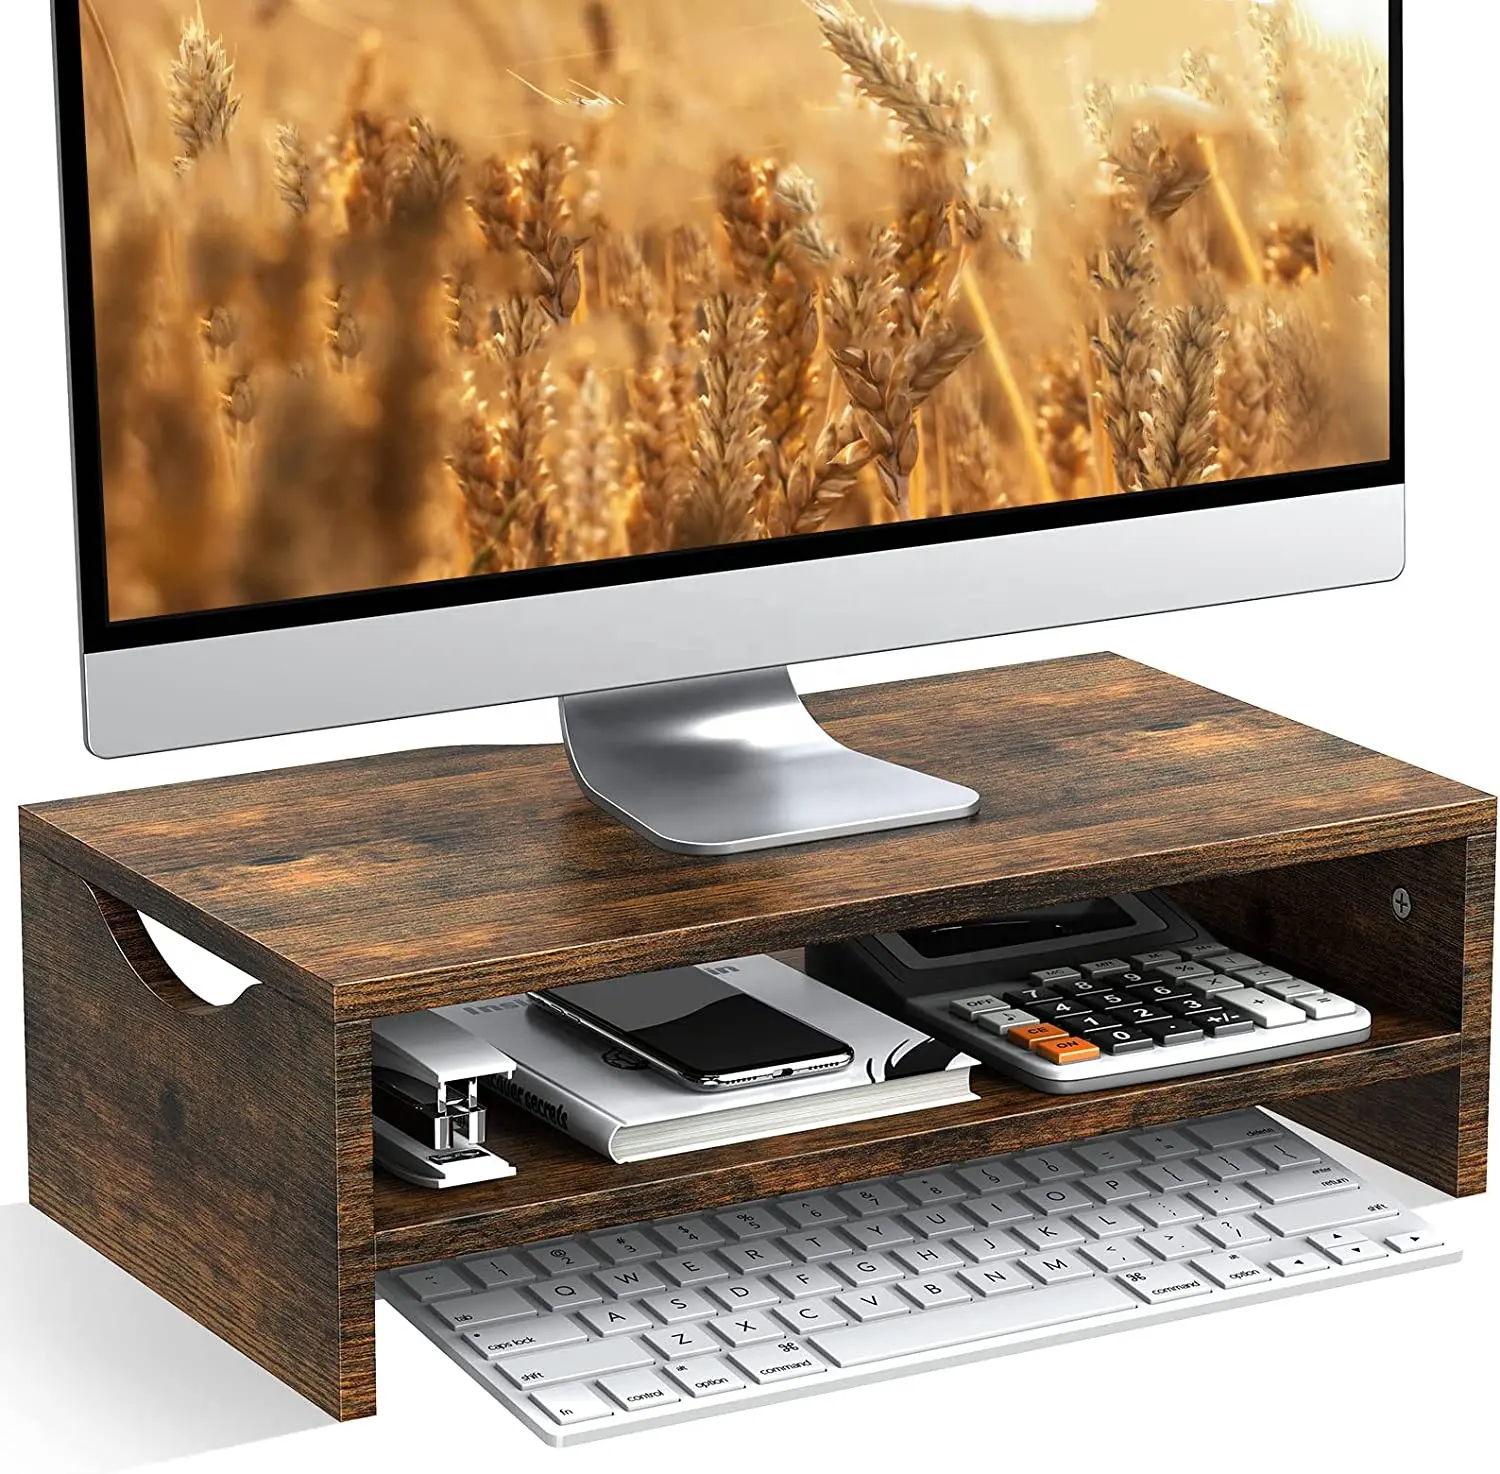 Văn phòng Máy tính để bàn bằng gỗ màn hình đứng Kệ bán buôn bằng gỗ Riser Gỗ Đứng văn phòng máy tính màn hình đứng